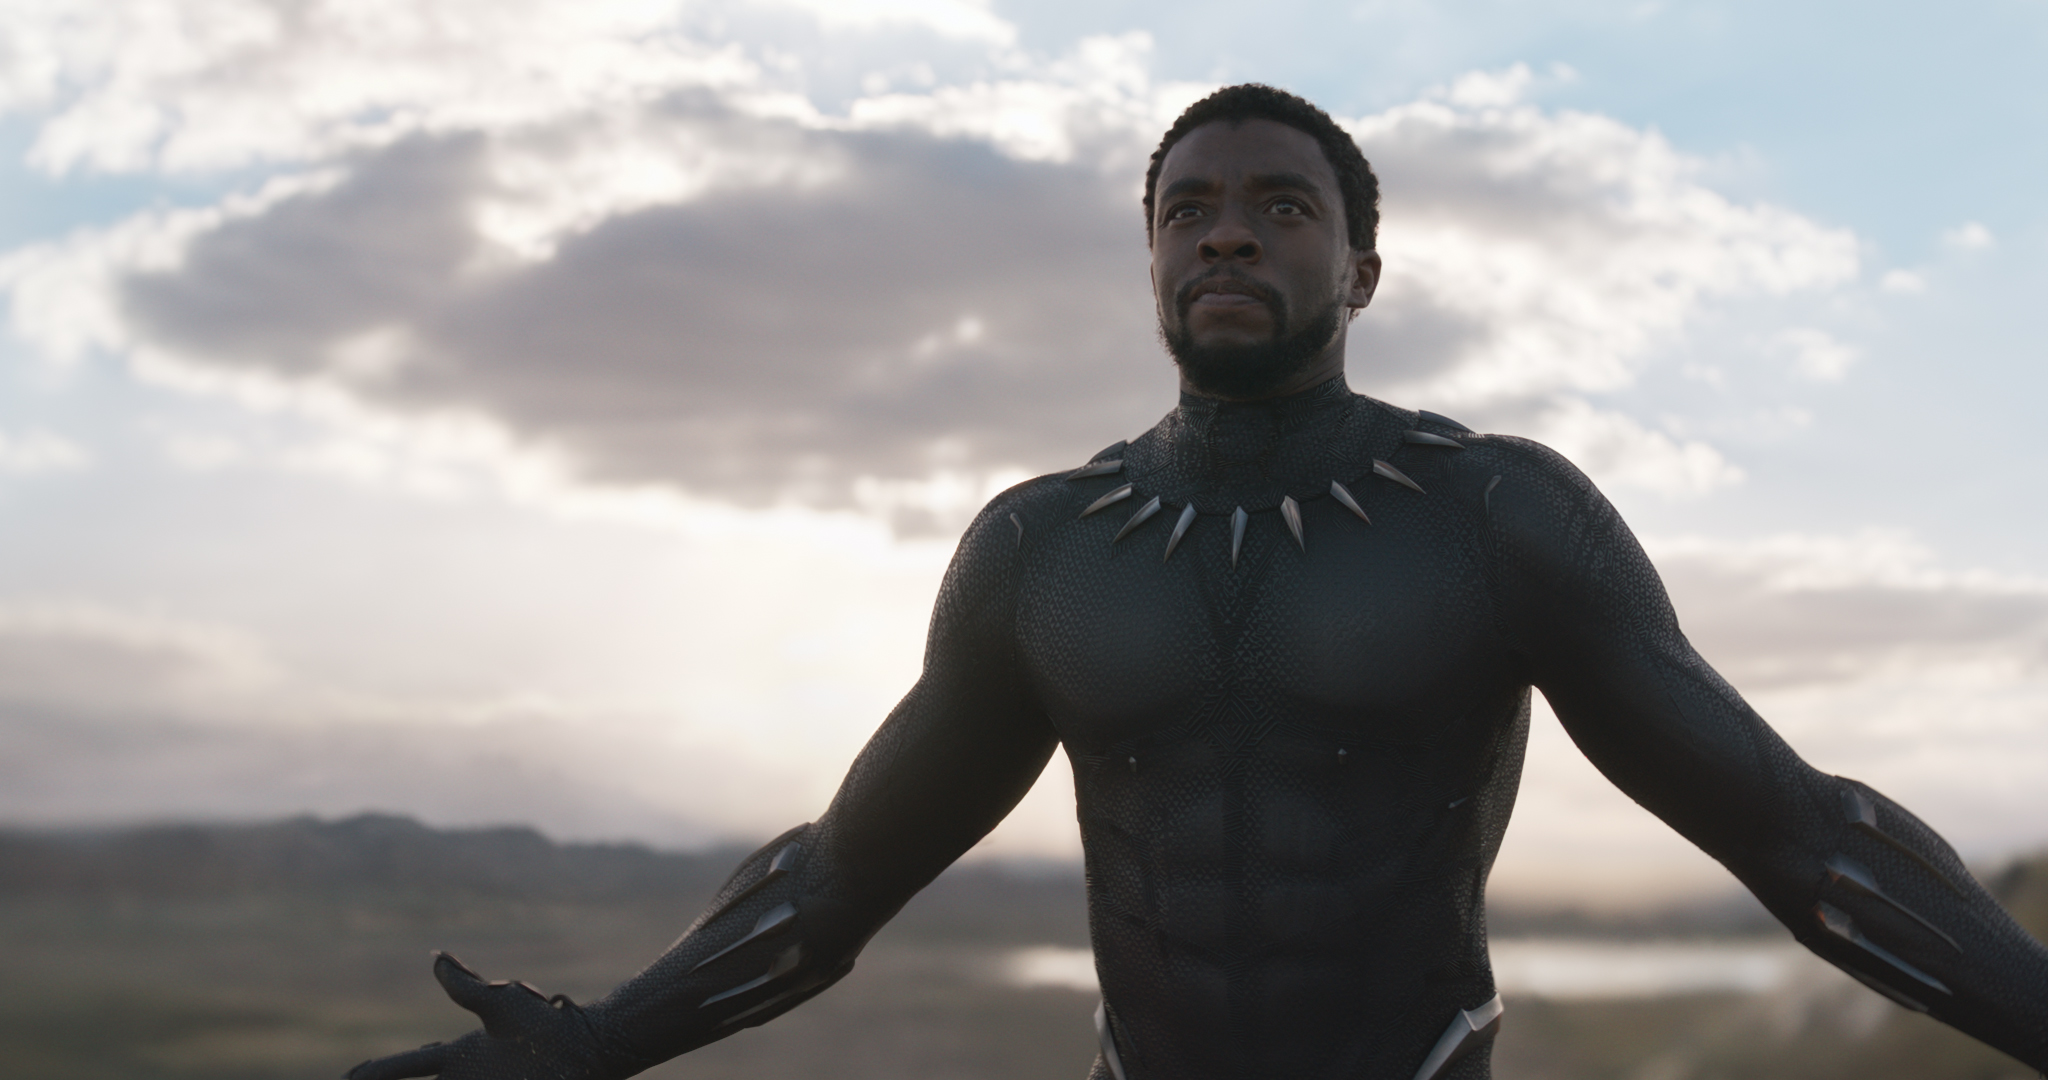 Le rappeur Kendrick Lamar invite 1000 enfants défavorisés à regarder "Black Panther" au cinéma